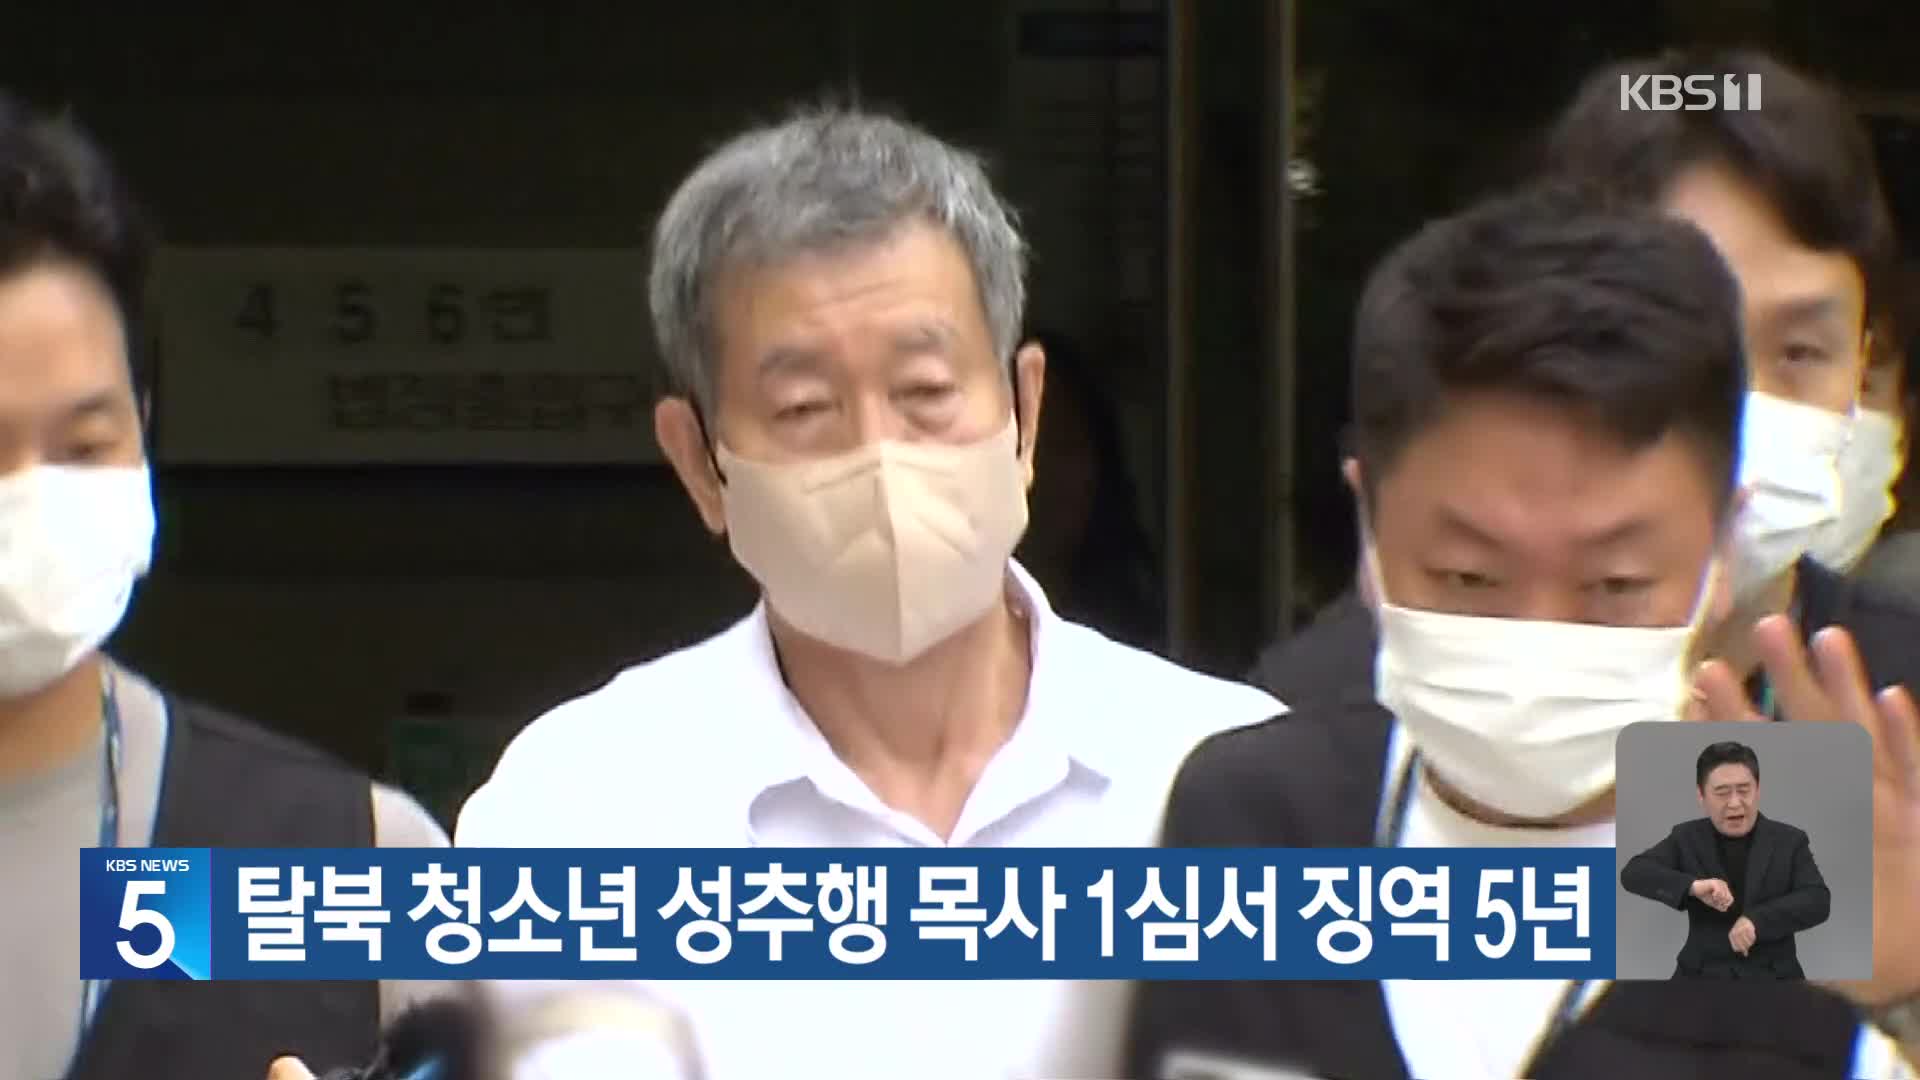 탈북 청소년 성추행 목사 1심서 징역 5년